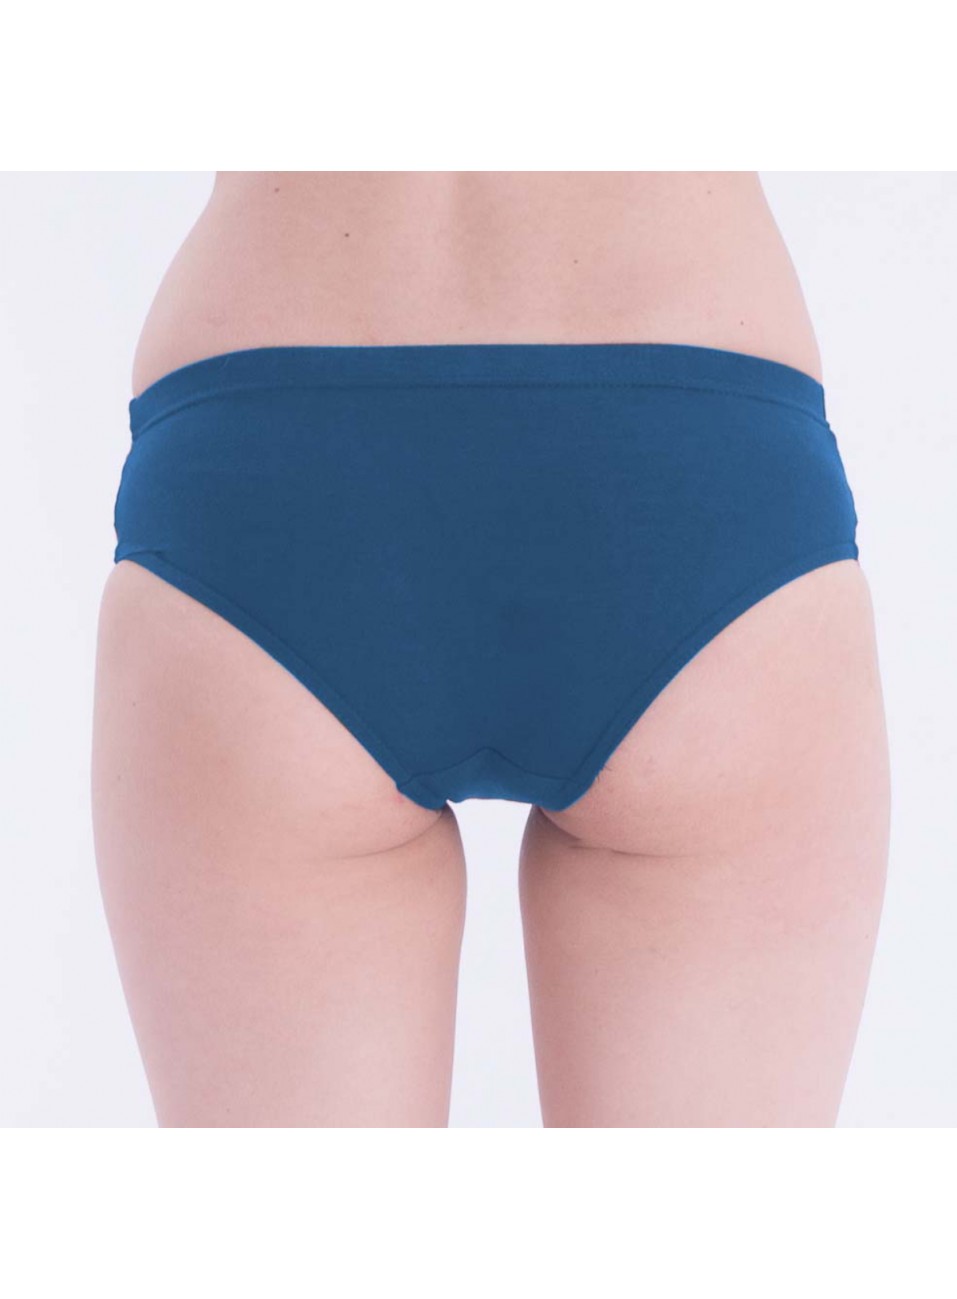 Ladies Panties Kavery plain (Inner Elastic) - 1 Pcs Pack